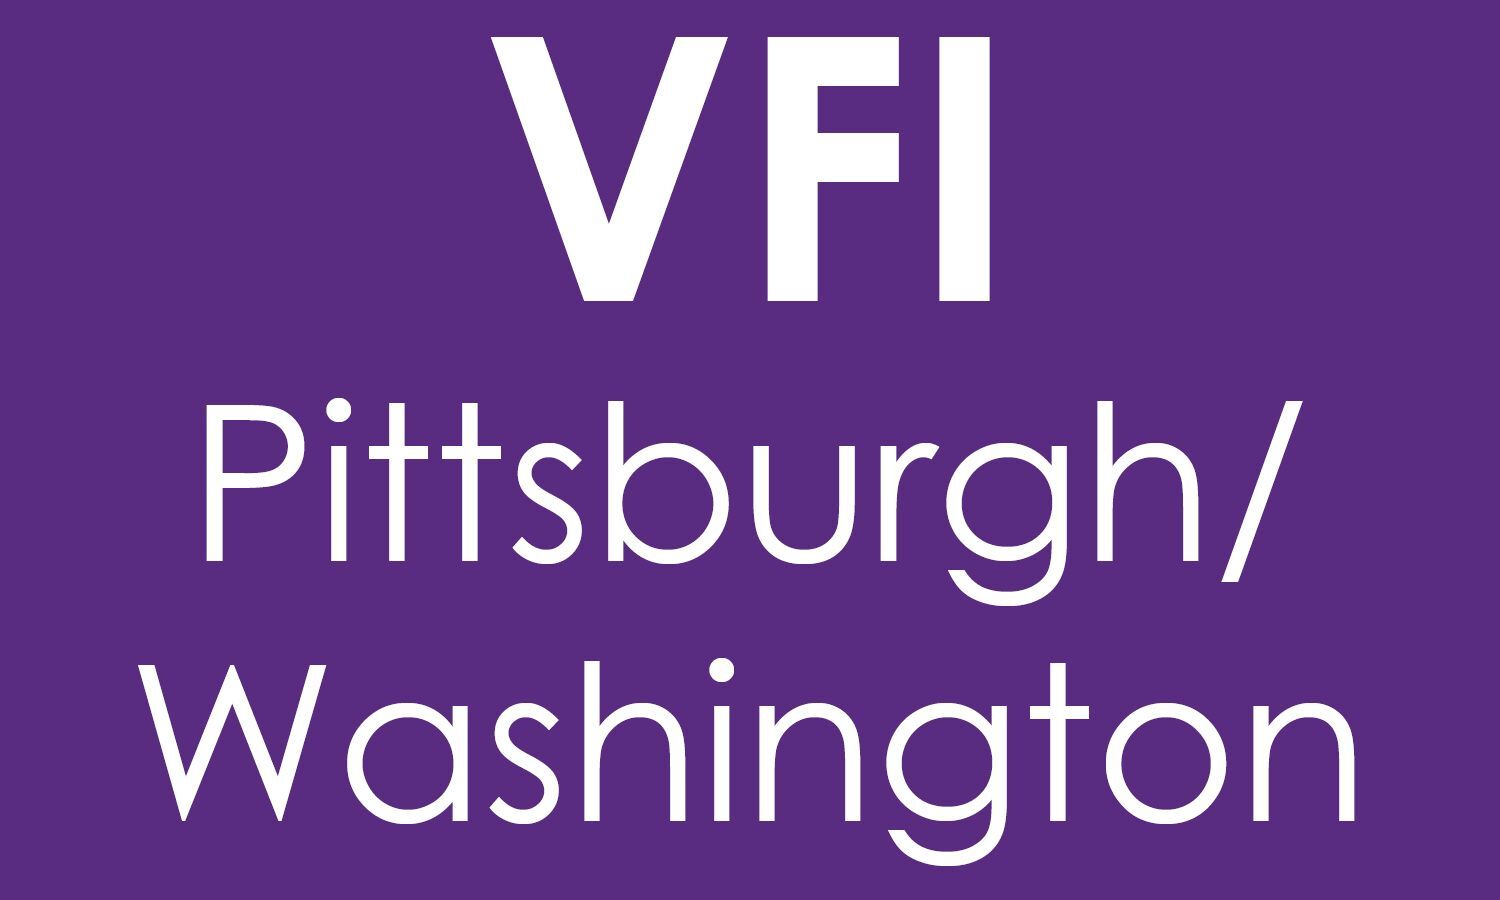 VFI Pittsburgh/Washington